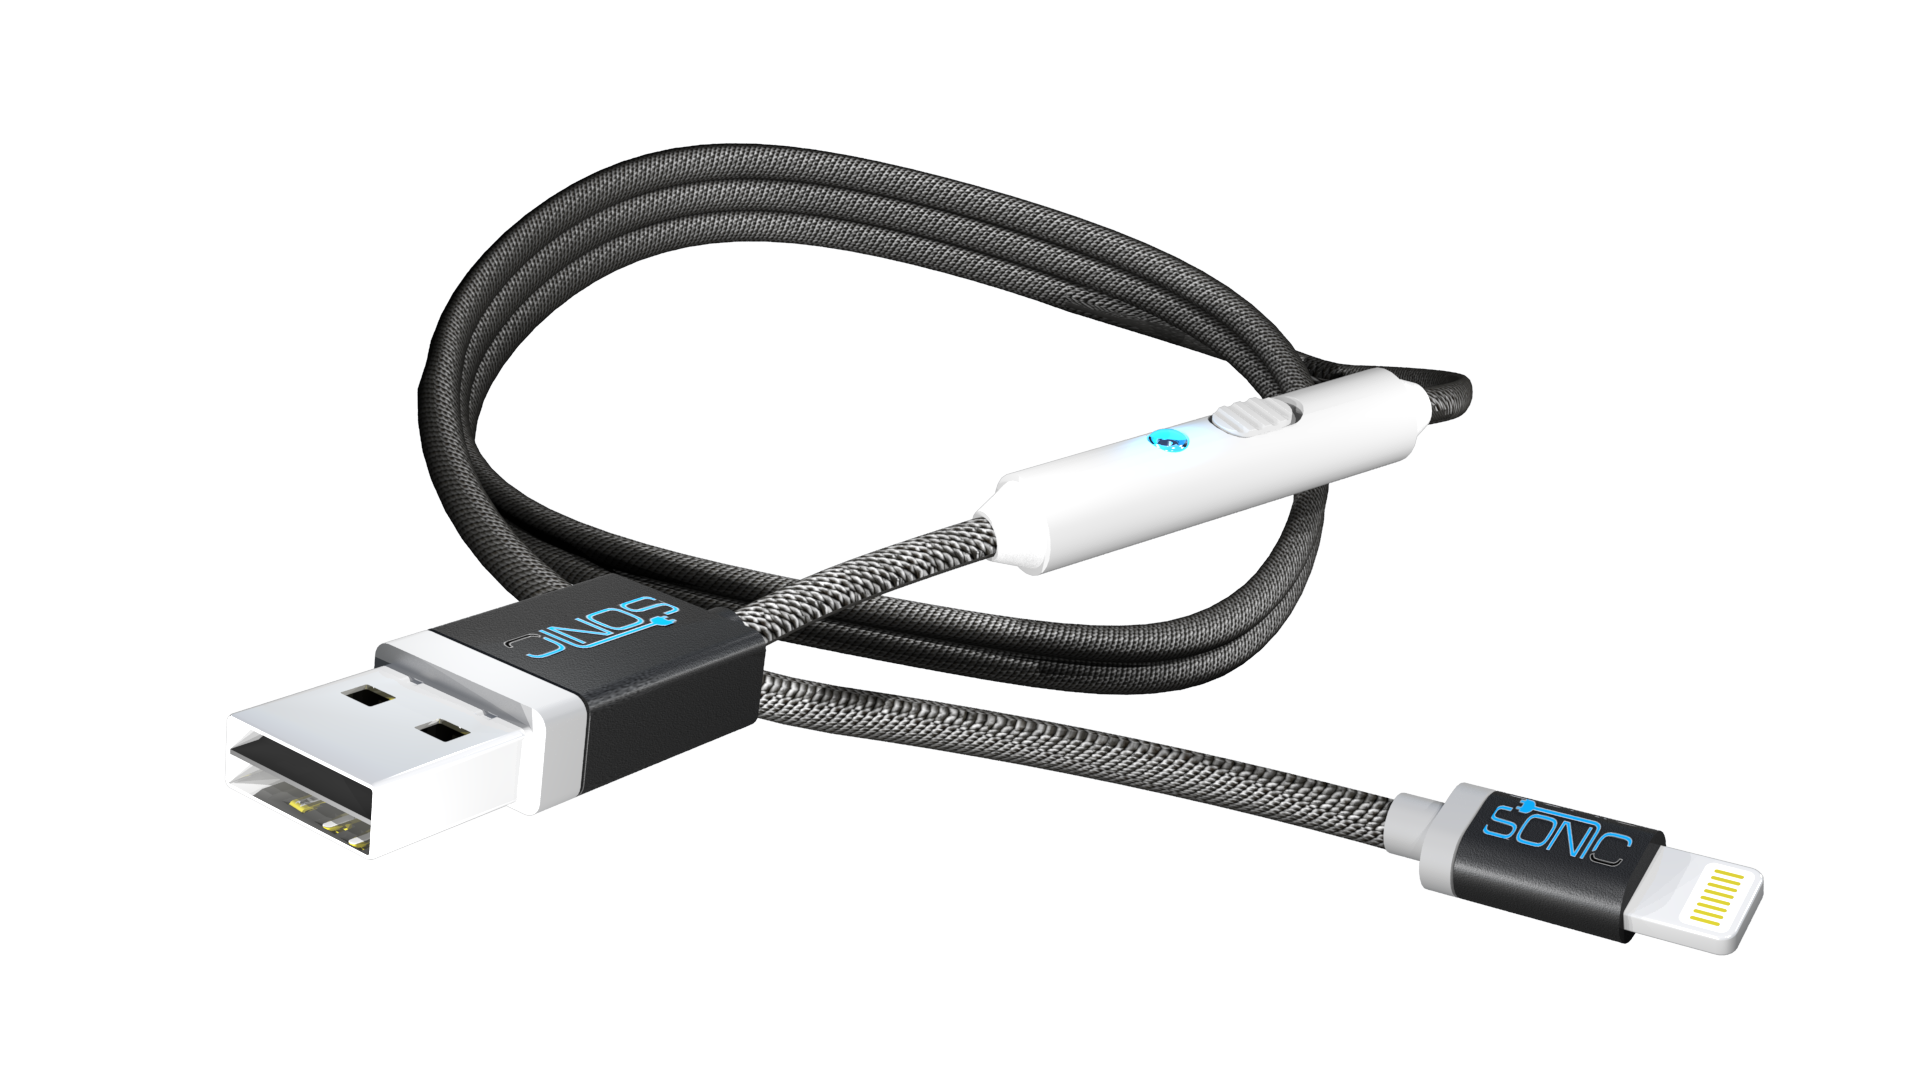 SONICable: nabijte své zařízení dvakrát rychleji než s běžným USB kabelem